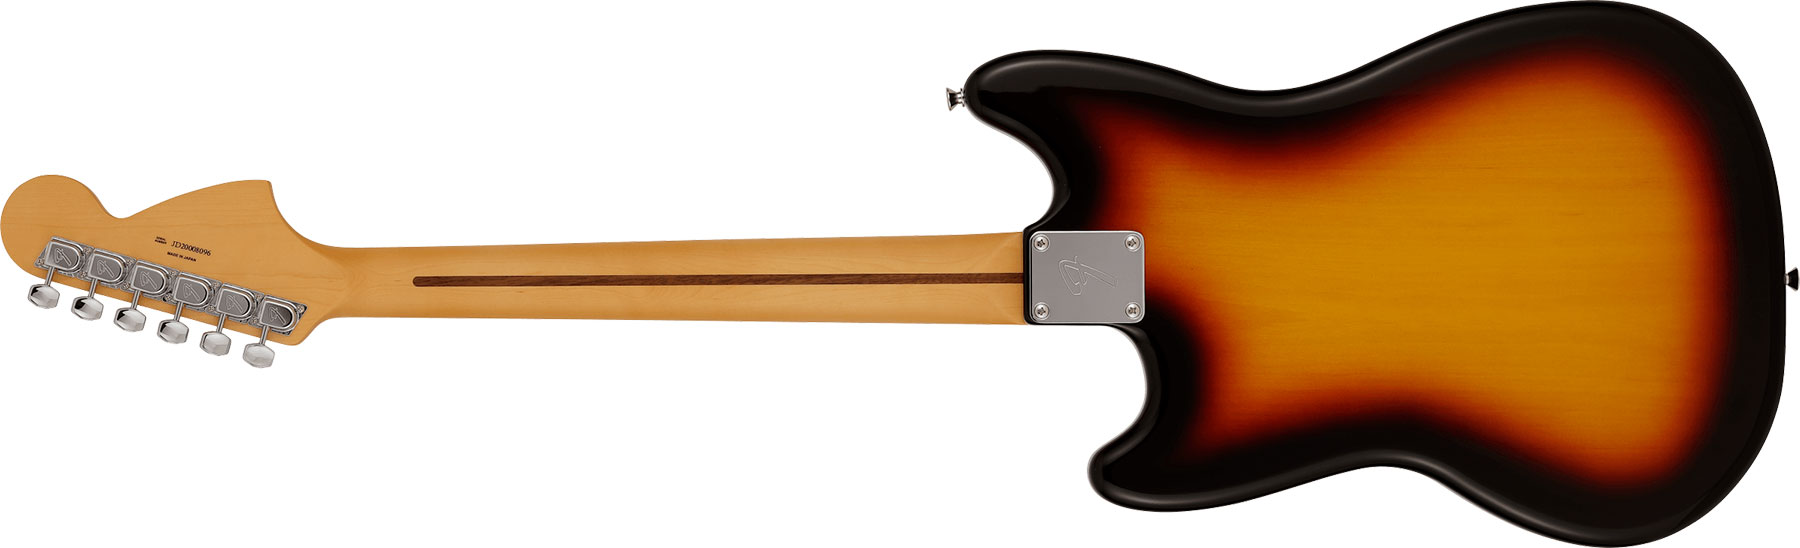 Fender Mustang Reverse Headstock Traditional Ltd Jap Hs Trem Rw - 3-color Sunburst - E-Gitarre in Str-Form - Variation 1